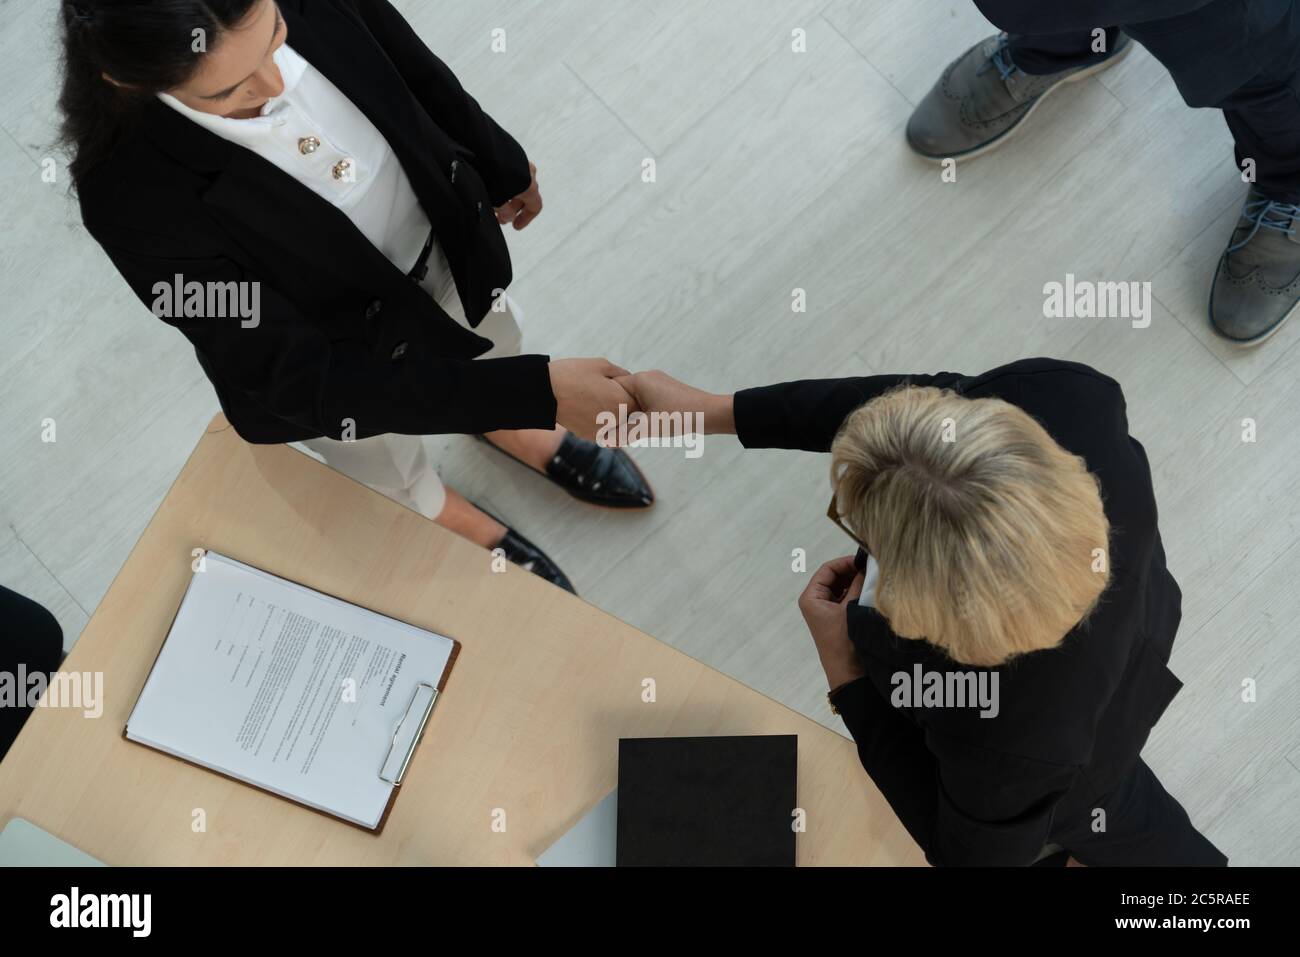 Los empresarios se dan un apretón de manos en la oficina corporativa Foto de stock